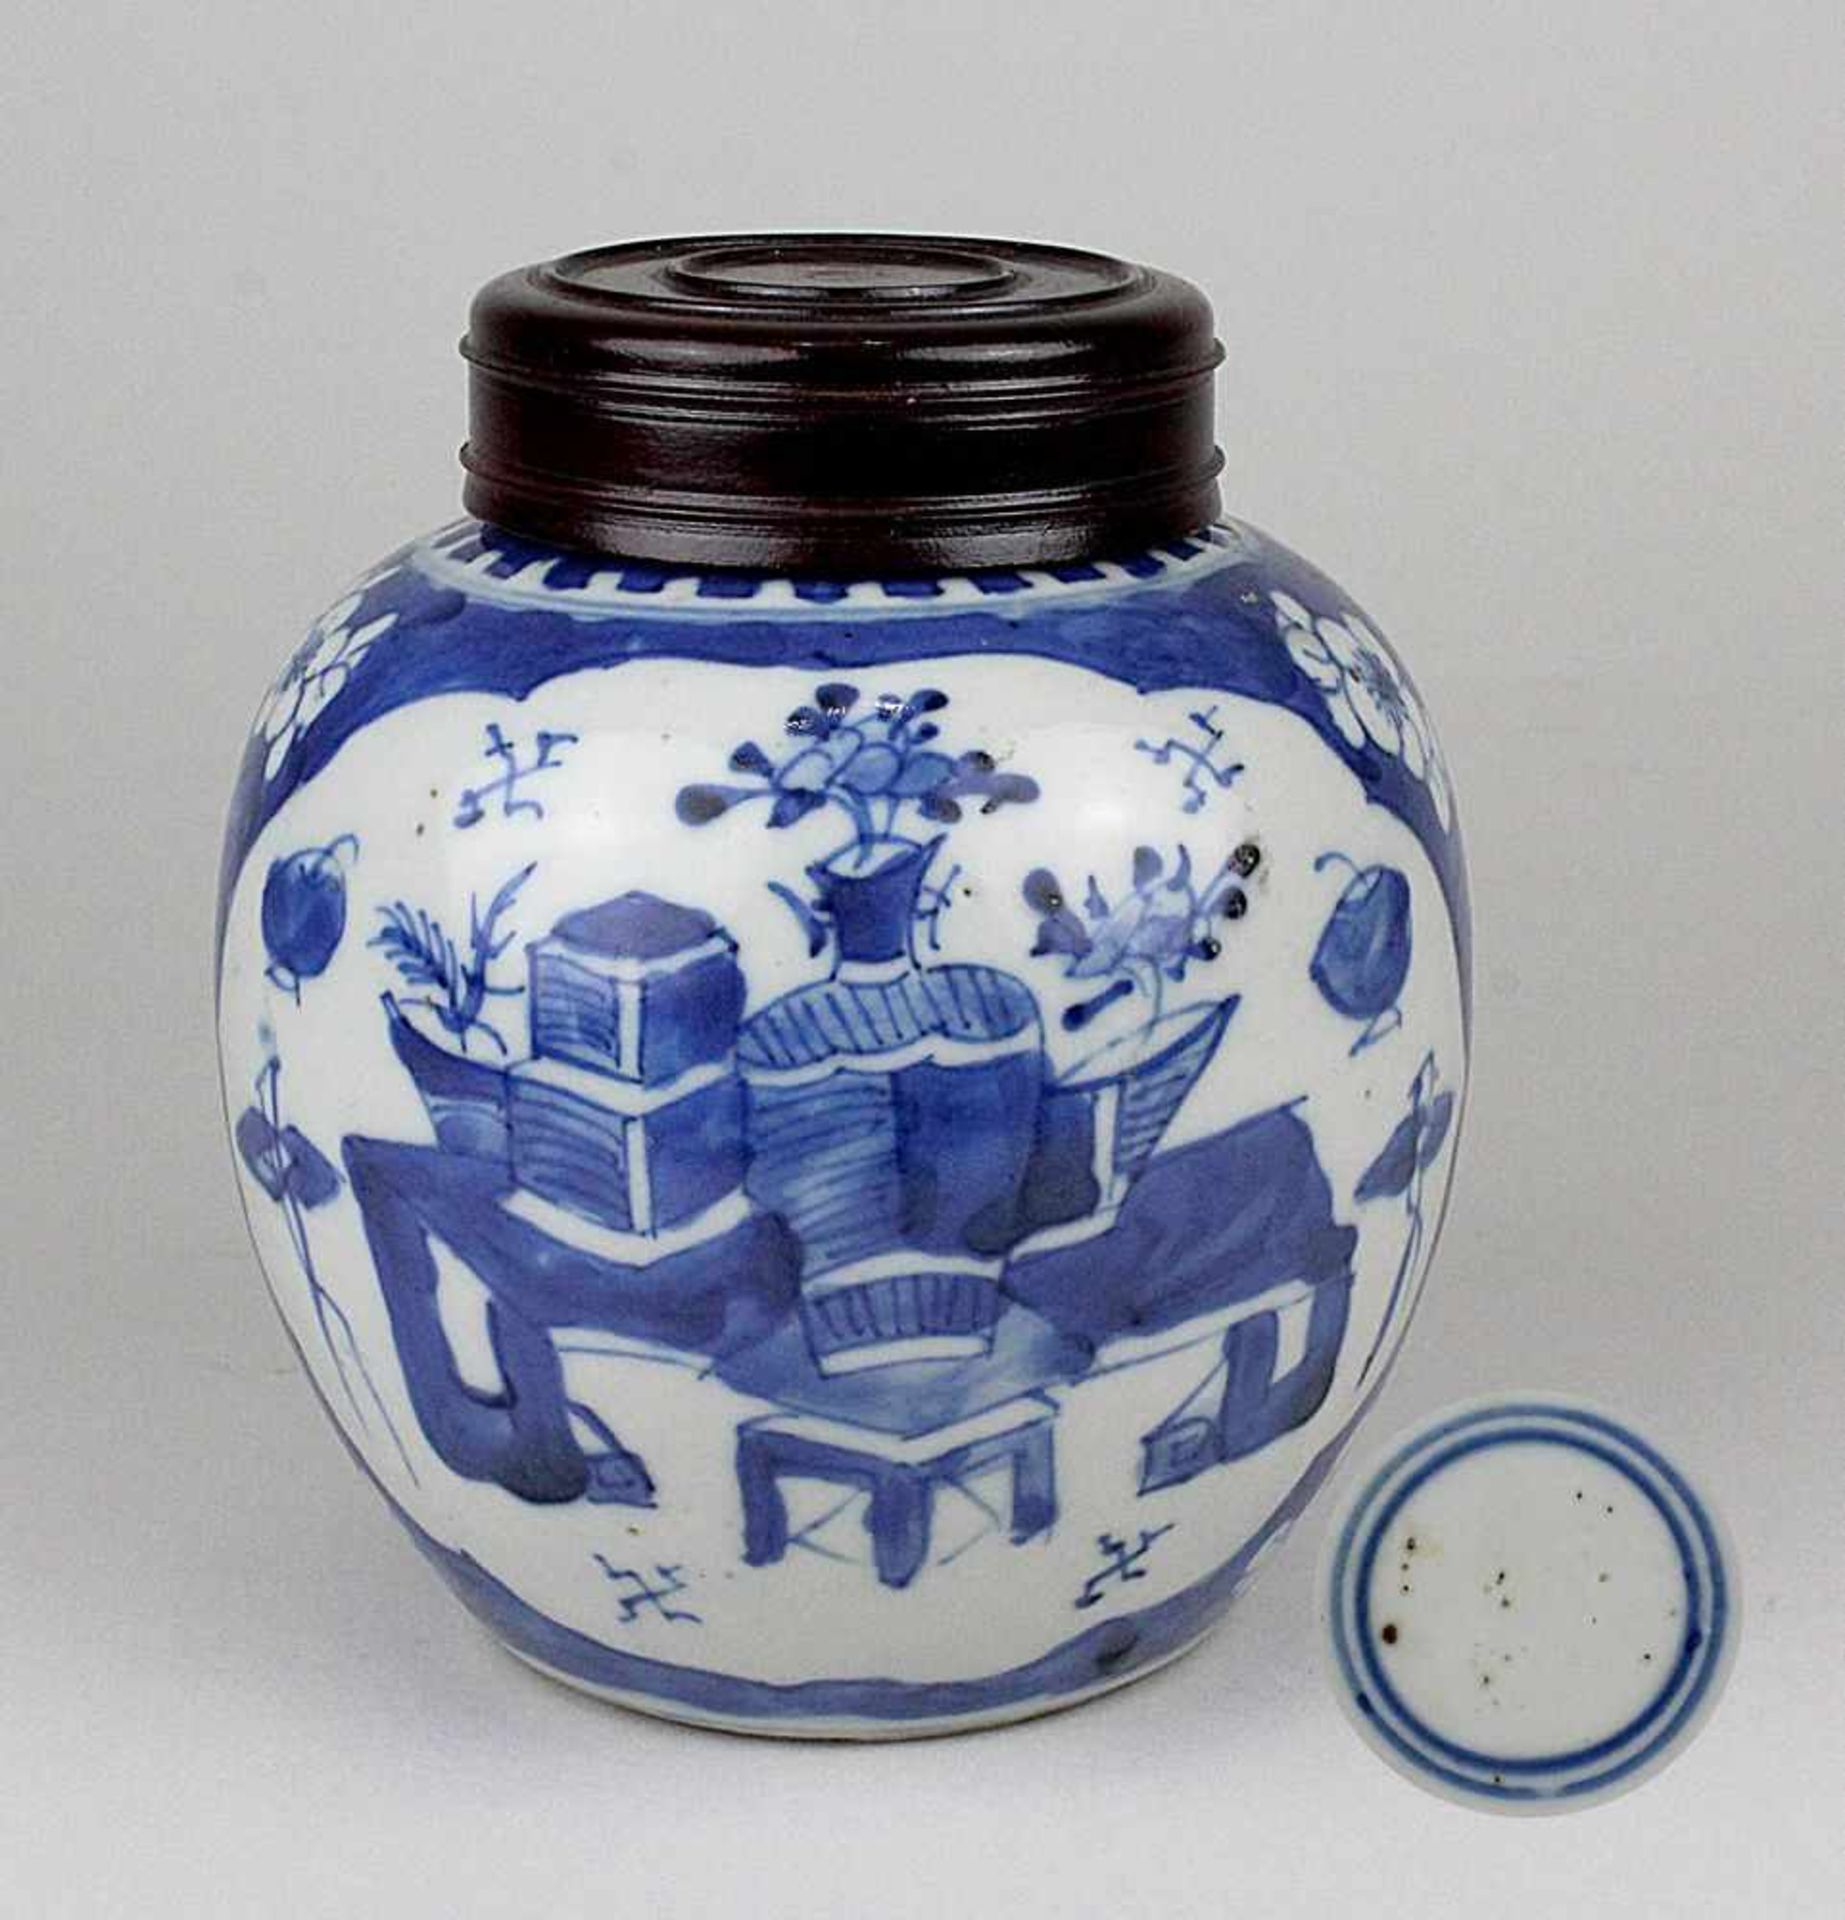 Schultertopf,China Kangxi 1654 - 1722. Porzellan mit hellblauem Scherben, unterglasur blau bemalt